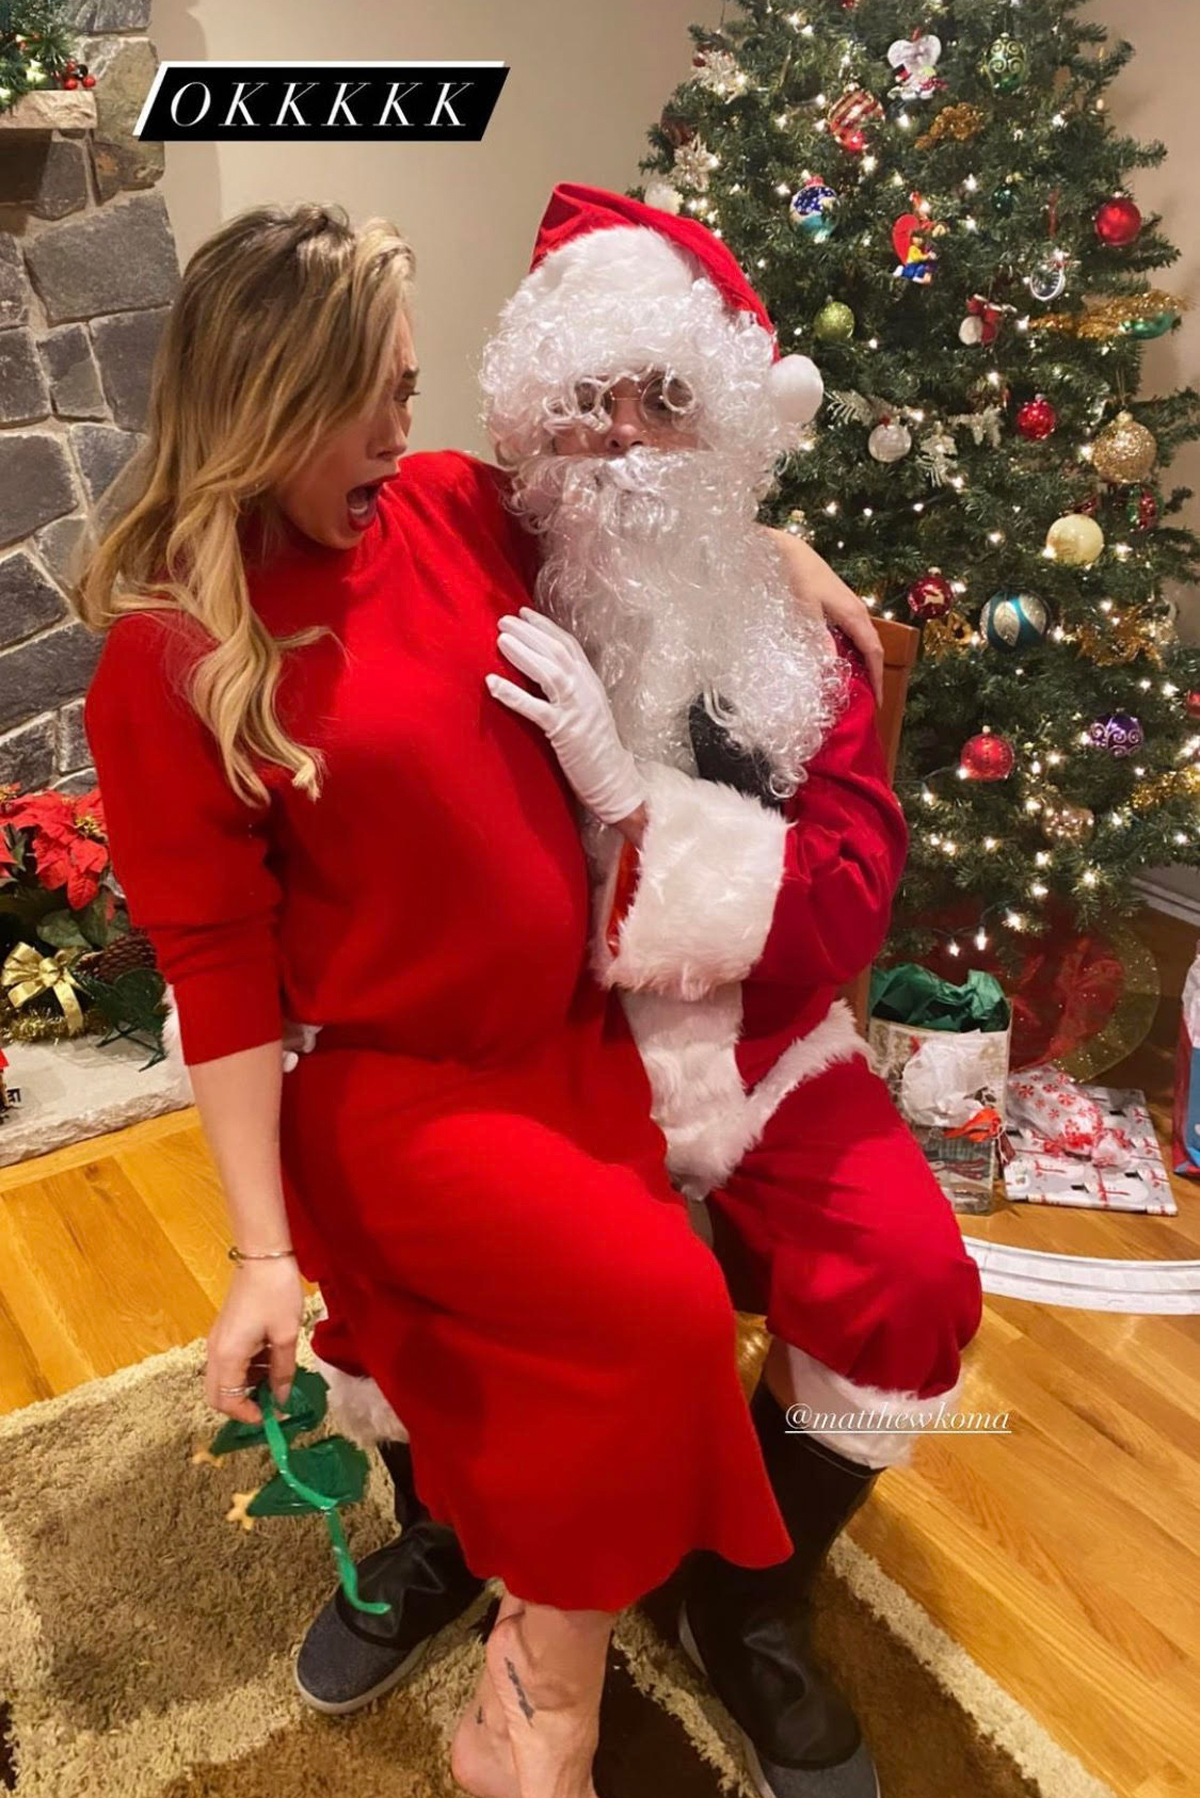 Hilary Duff's Santa cops a feel